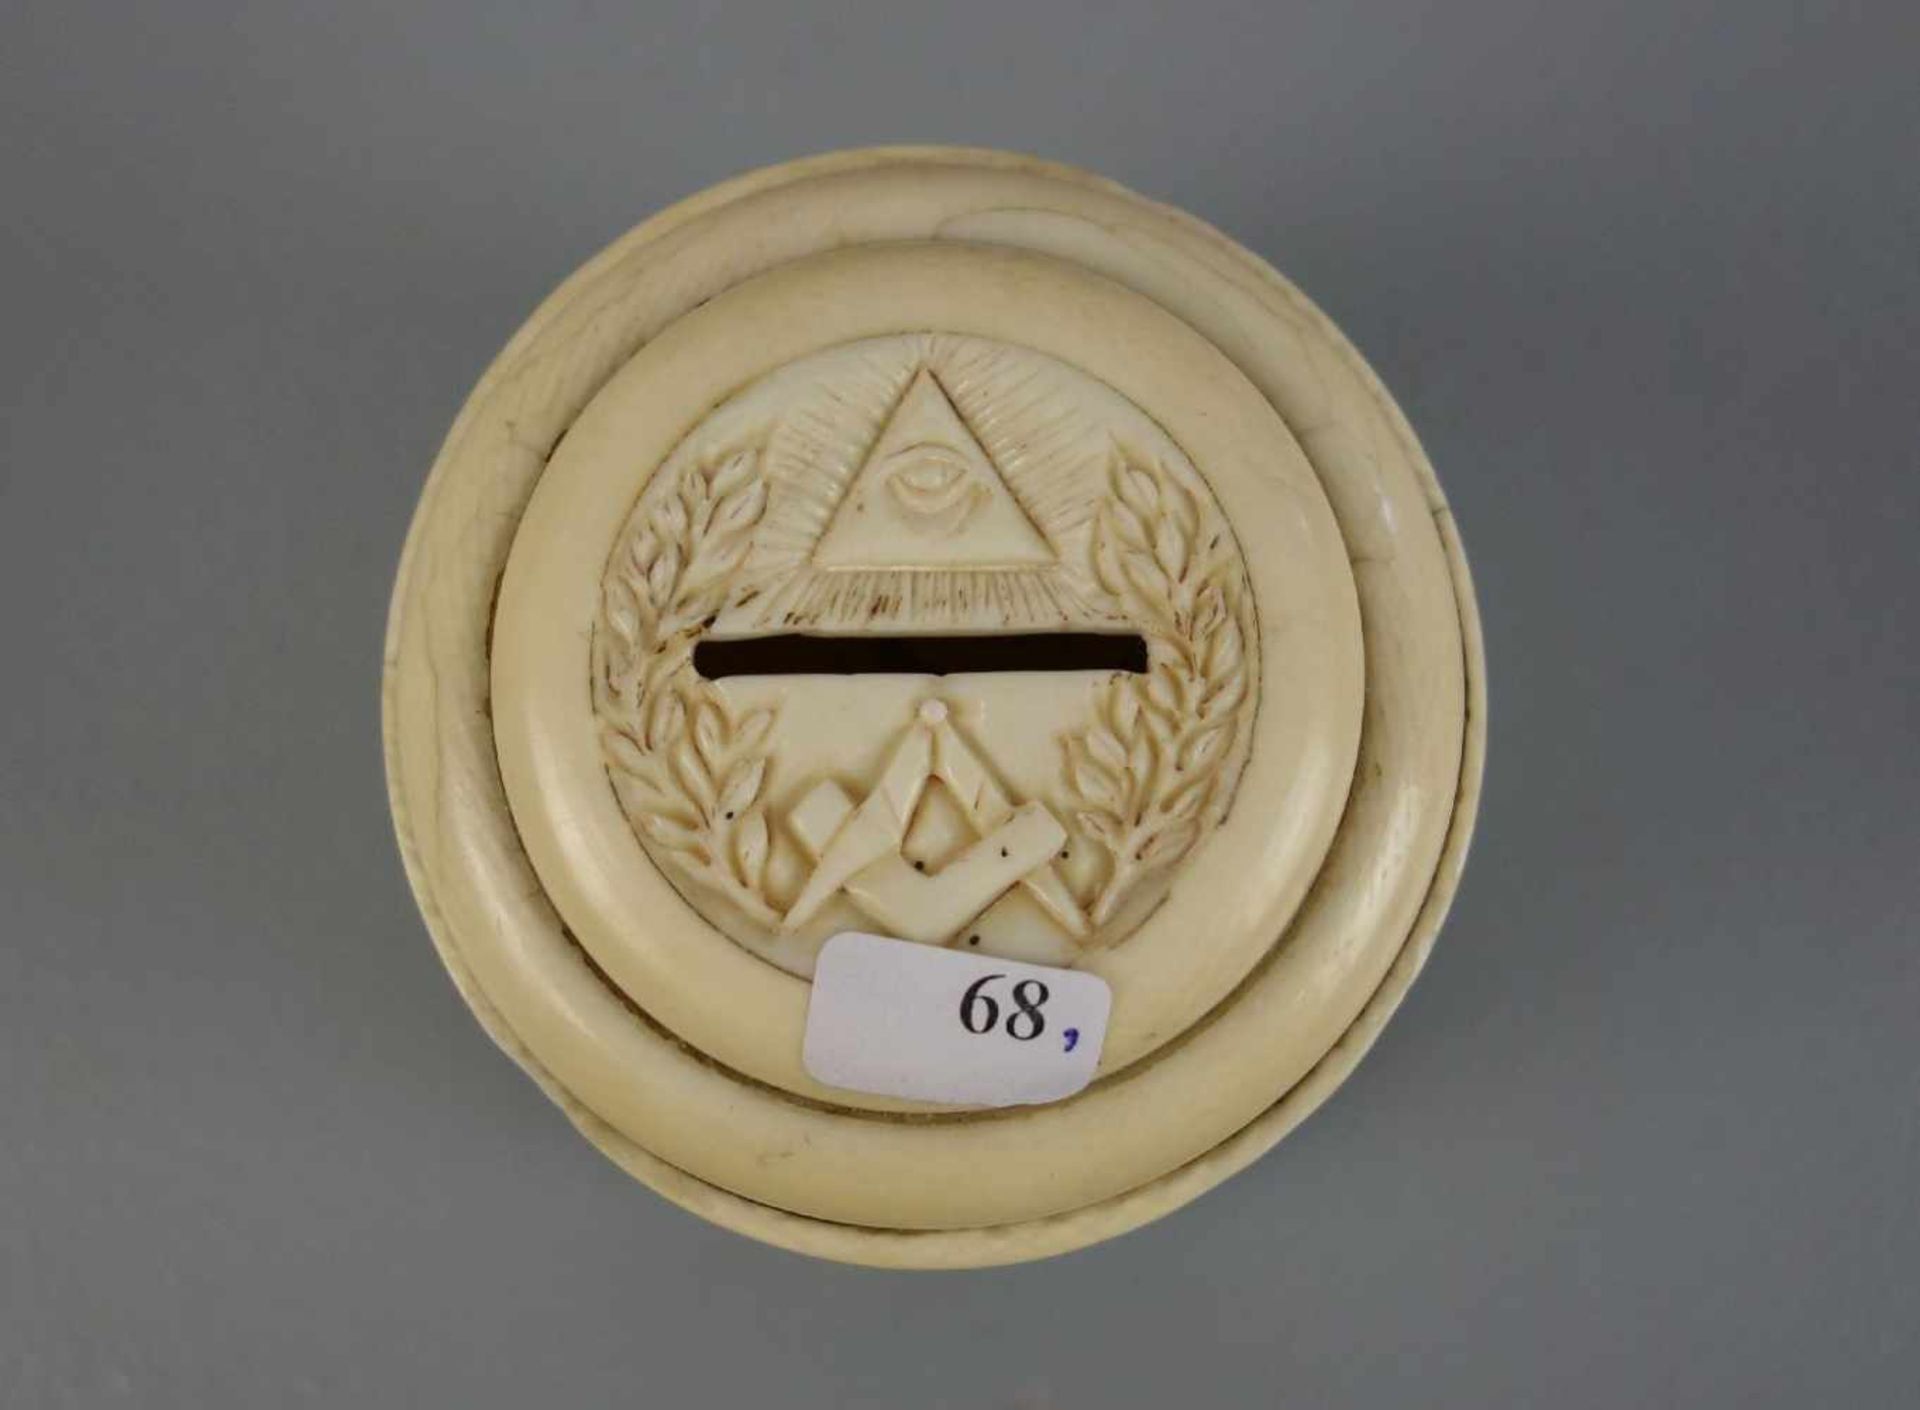 FREIMAURER SPARDOSE / masonic money box, 19. Jh., Elfenbein und Holz , Frankreich, datiert "1839" - Bild 2 aus 5